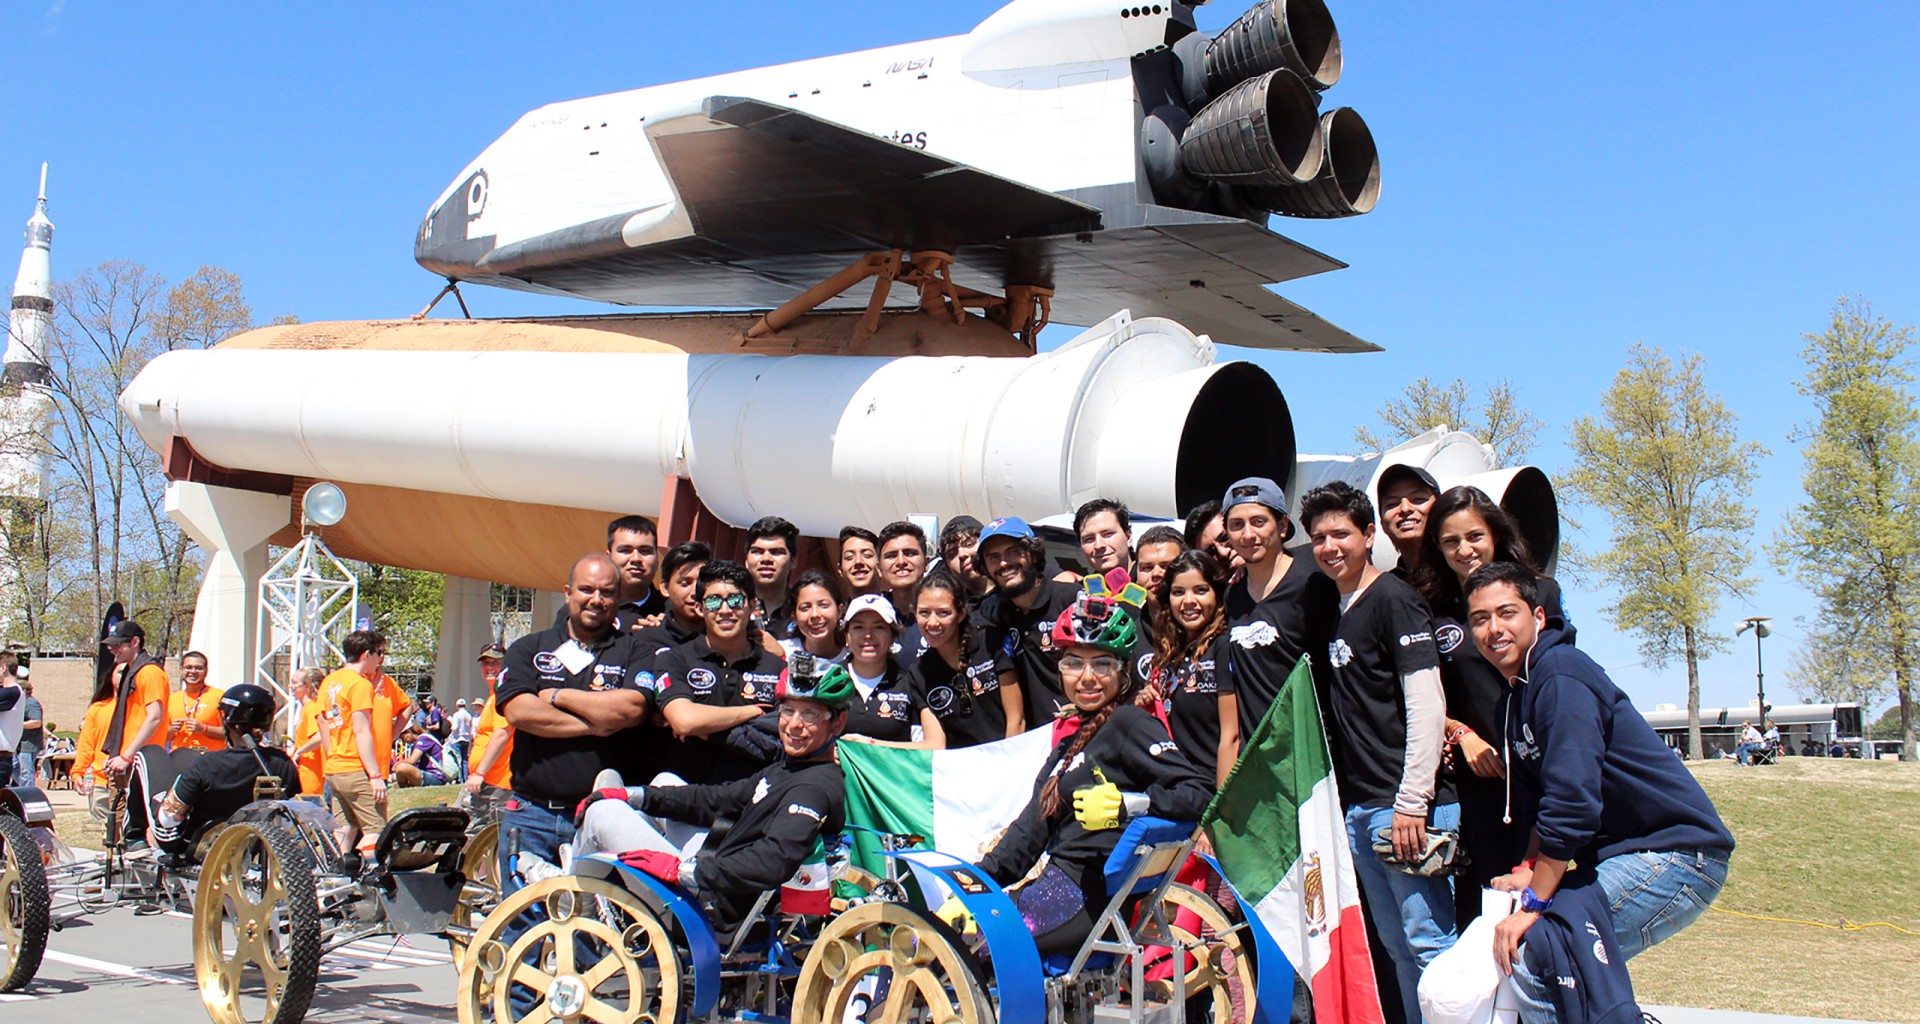 Equipo Fuerza México en competencia de la NASA